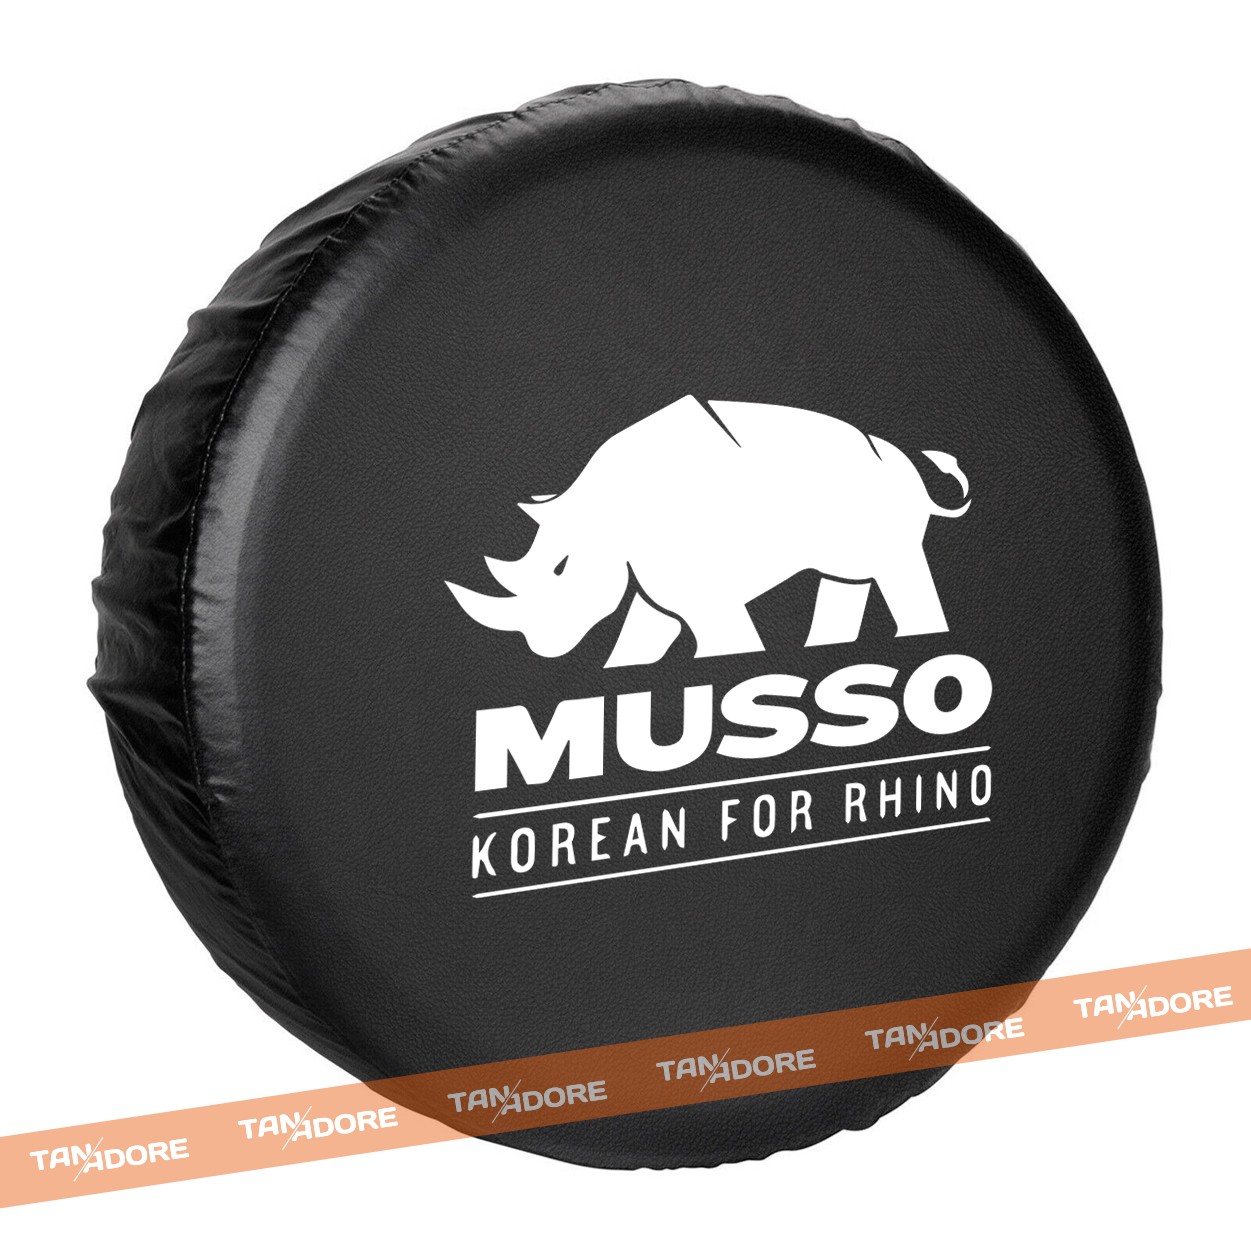 Musso Korean for Rhino Stepne Kılıfı